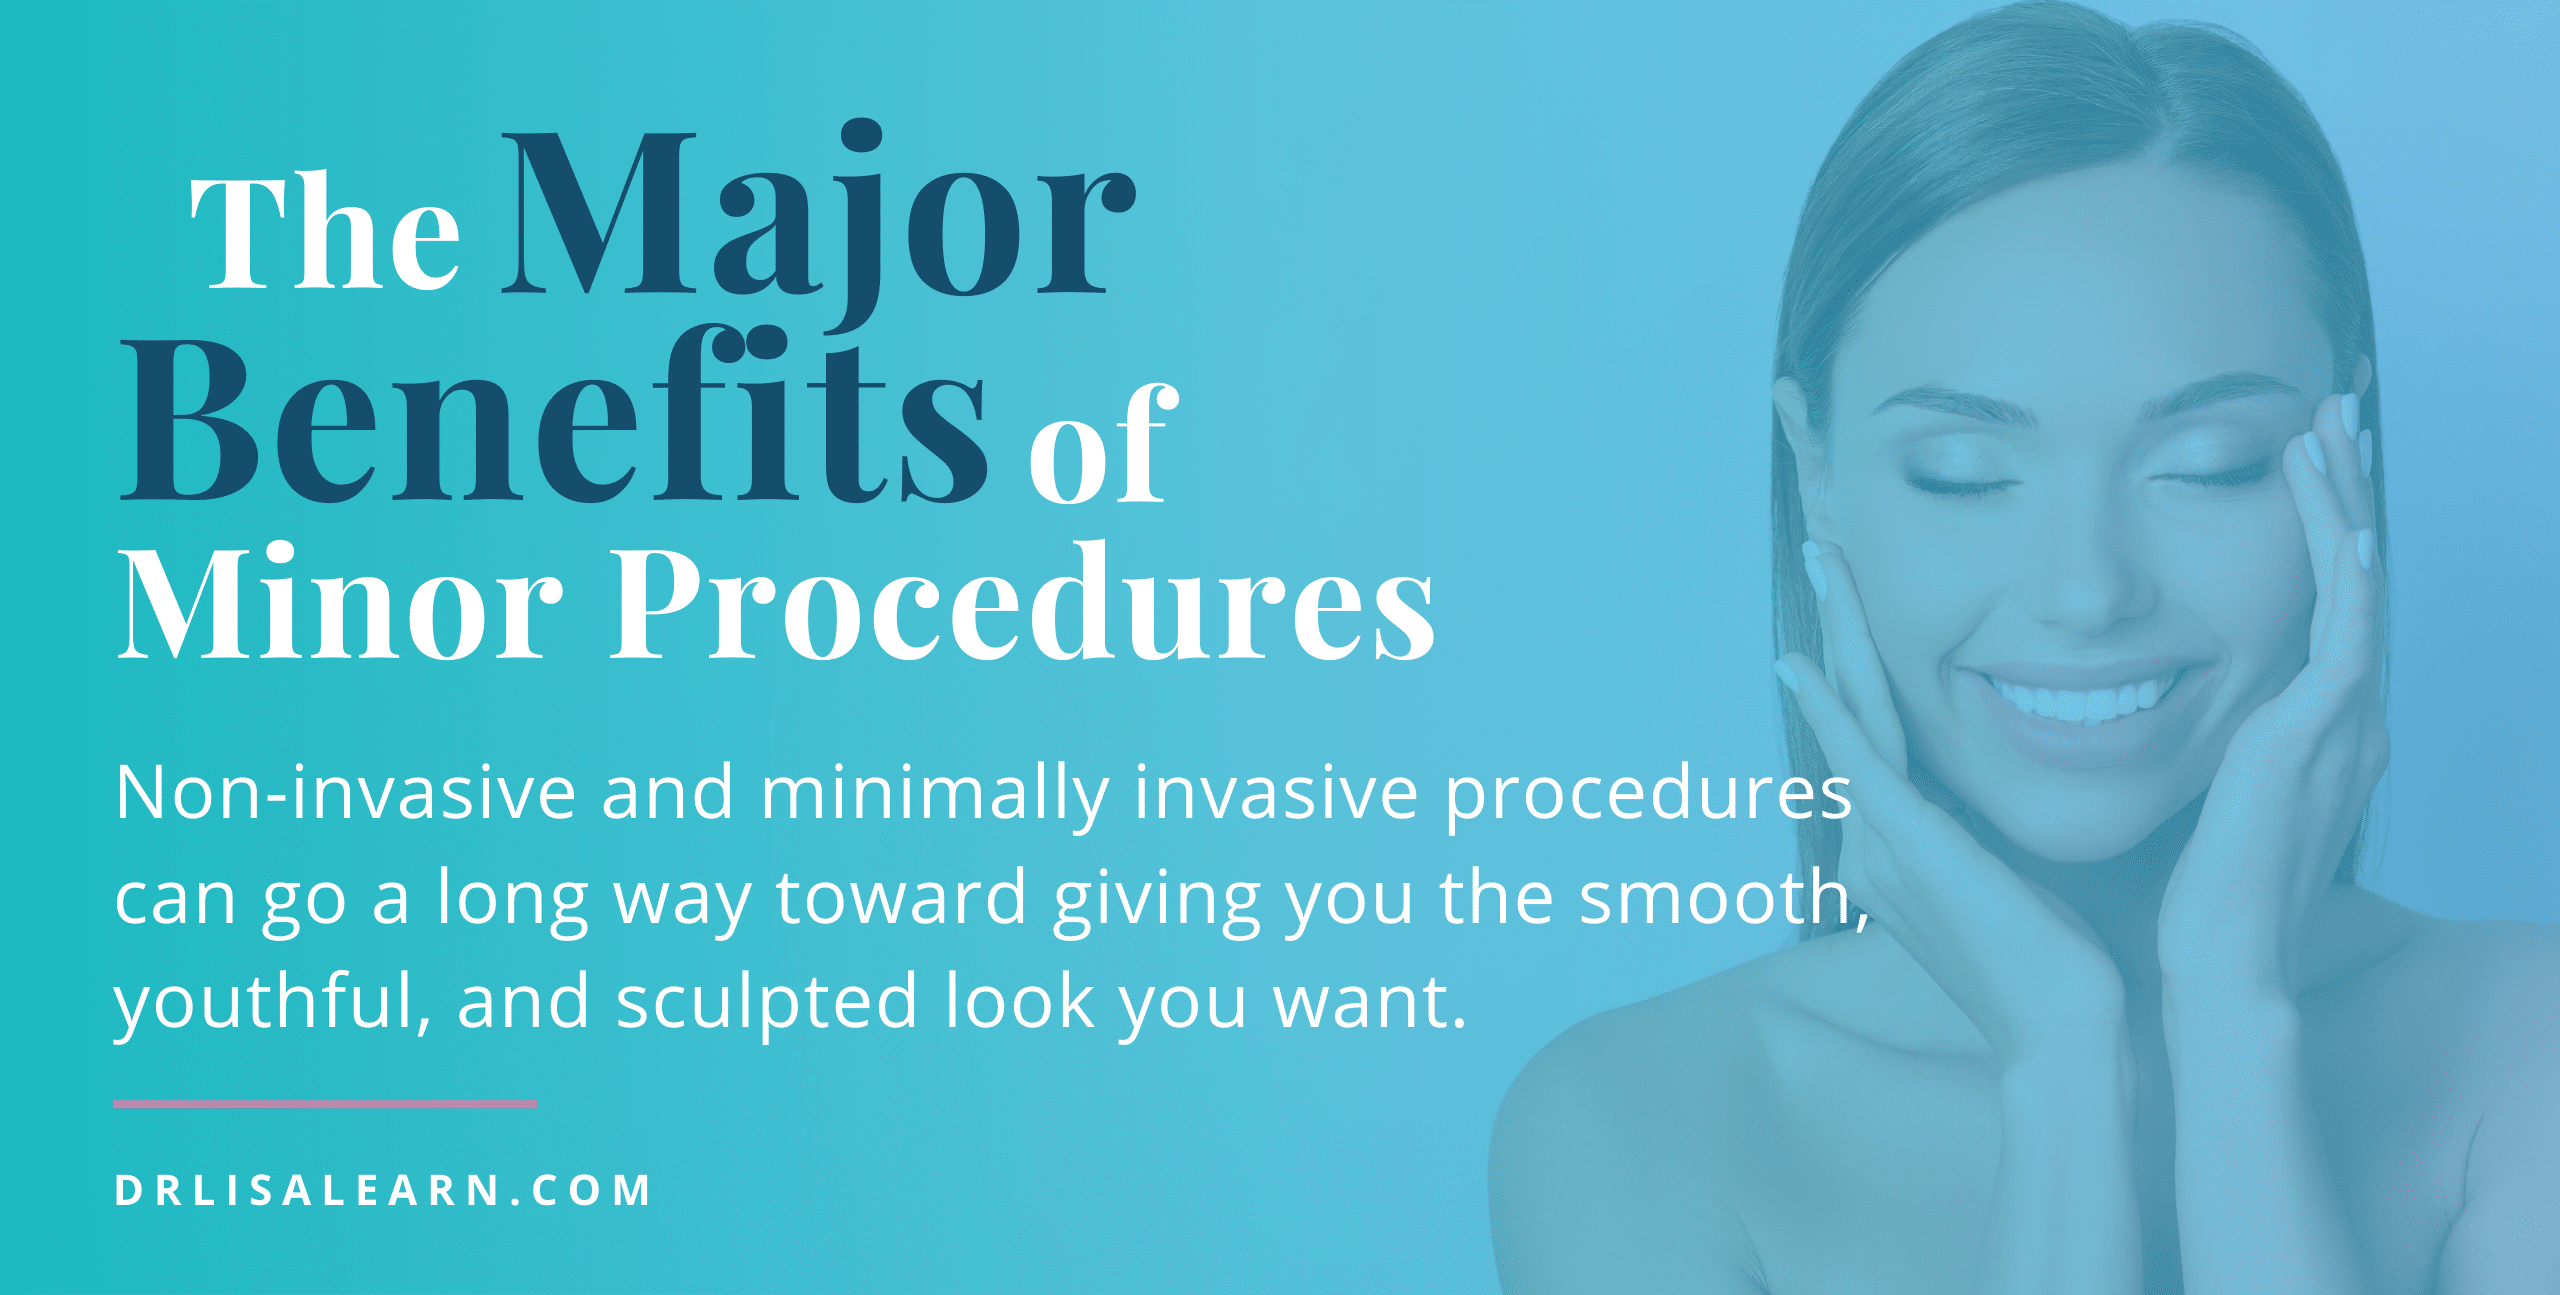 The Major Benefits of Minor Procedures